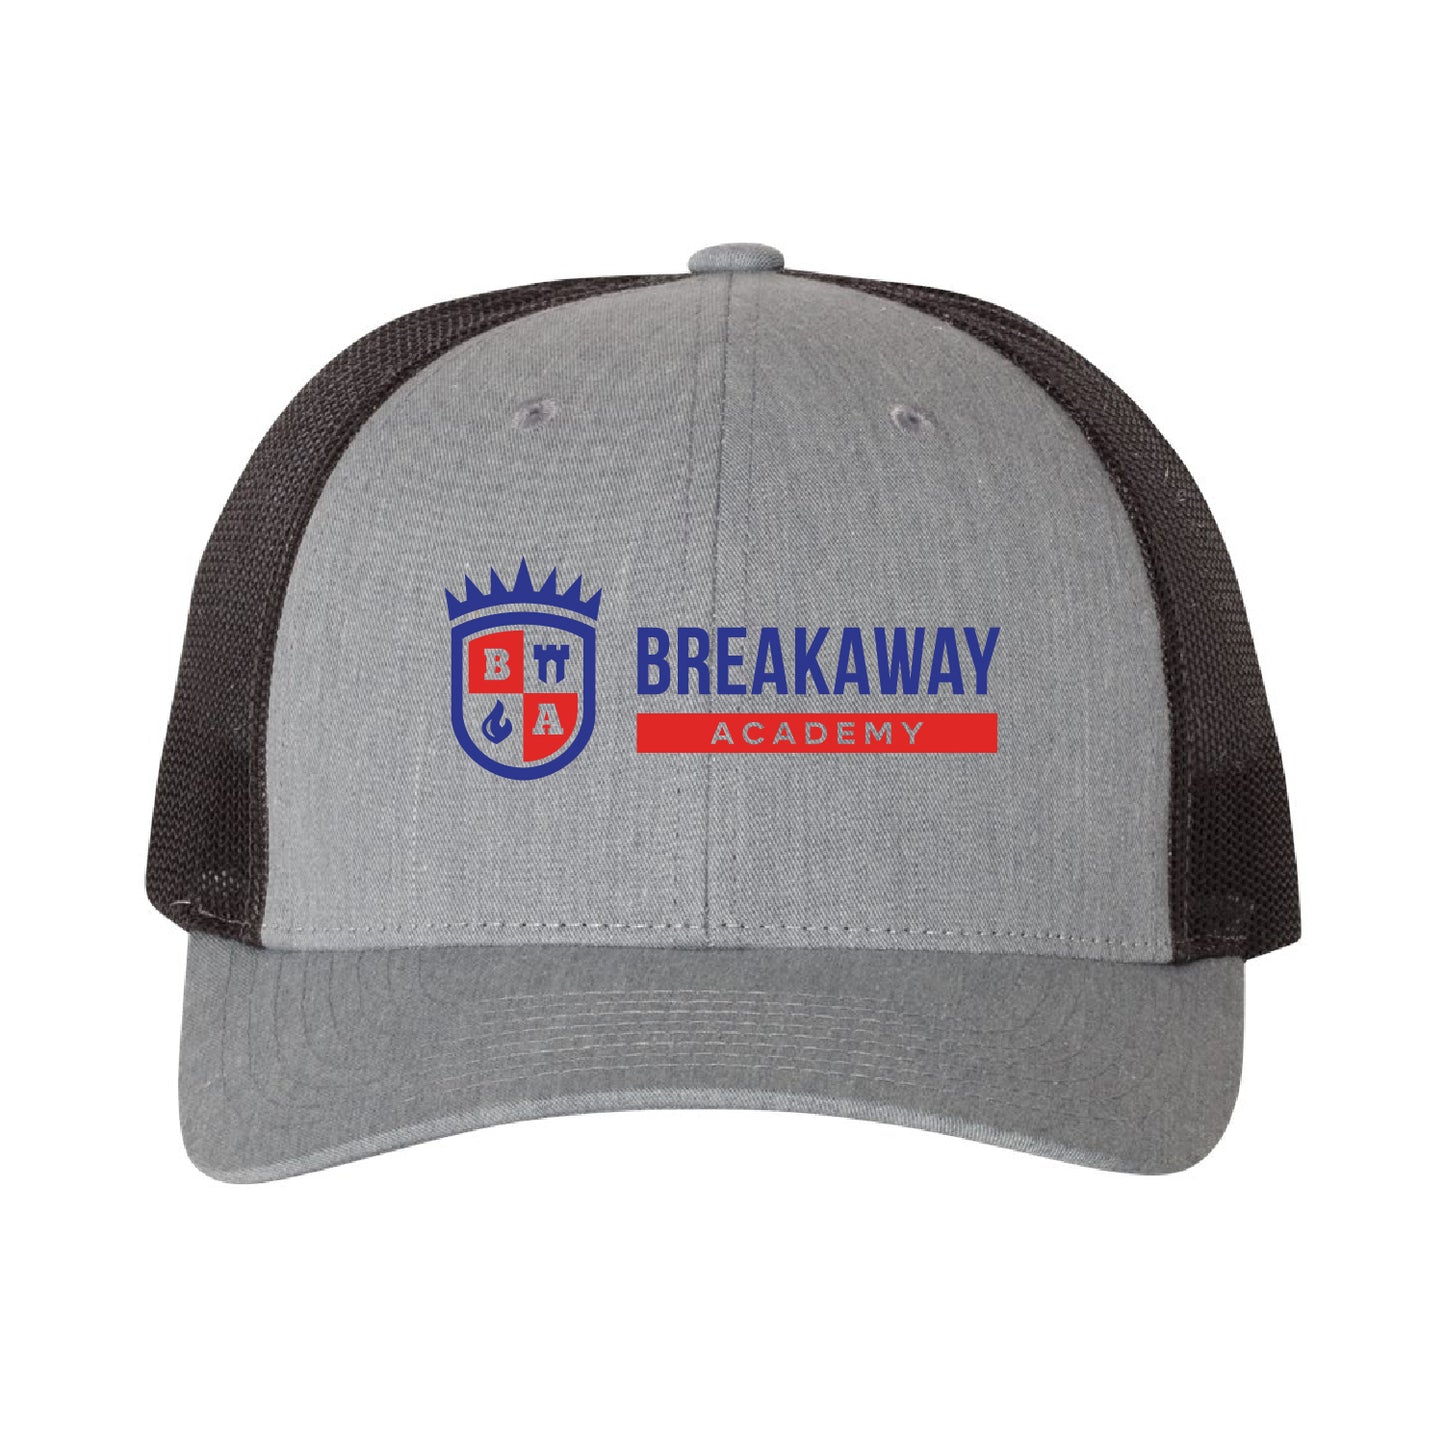 Breakaway Academy Low Pro Trucker Cap